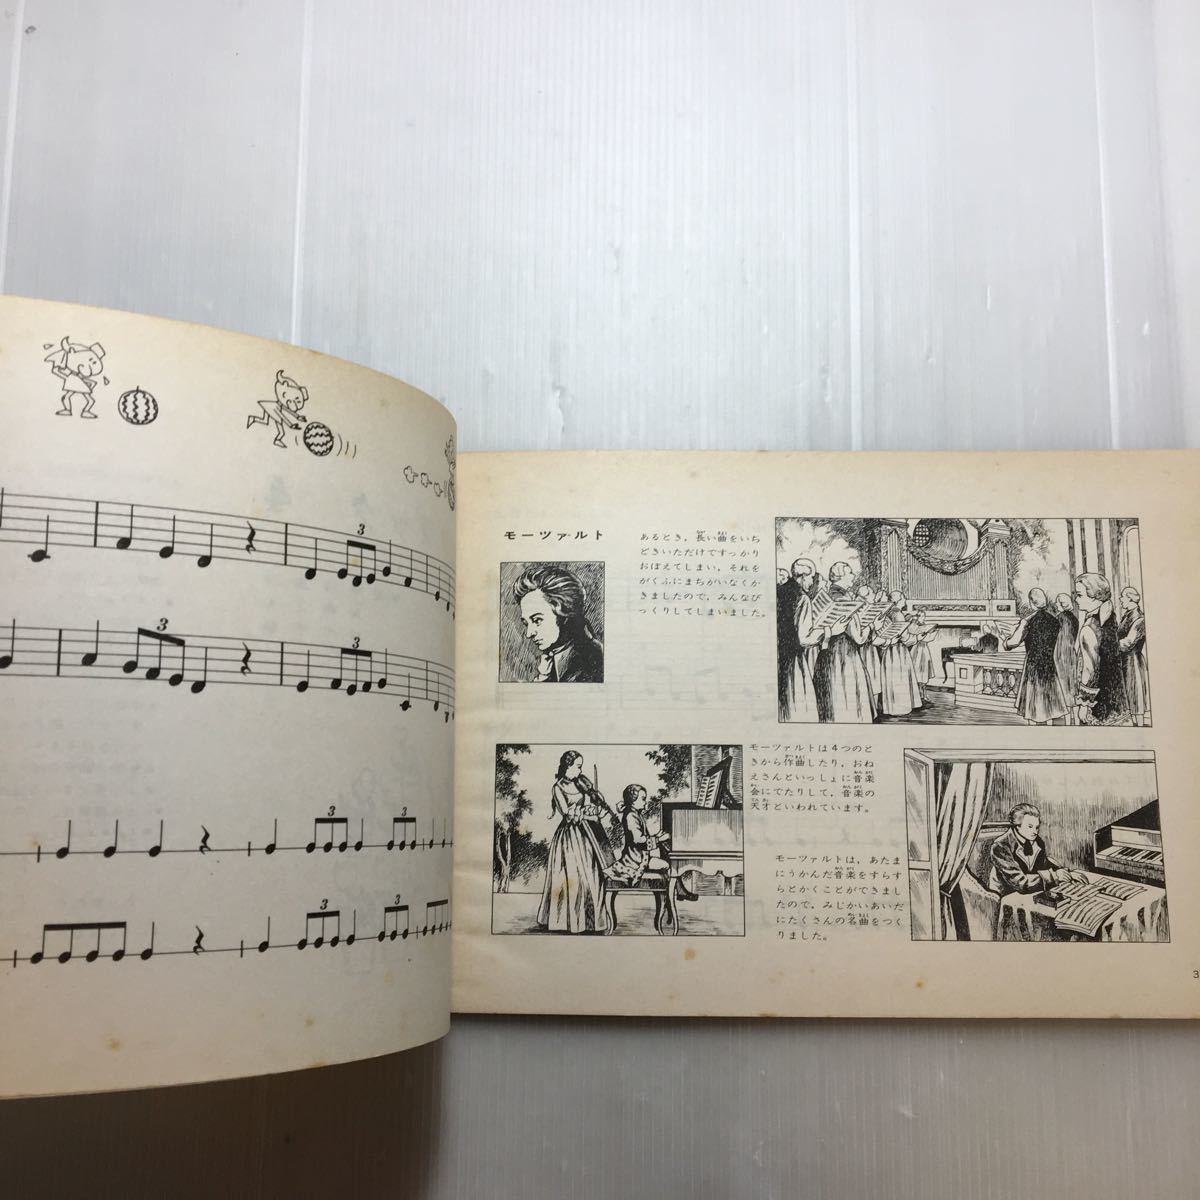 zaa-180! happy Work book 3*4 2 pcs. set Yamaha music ... wistaria britain structure, height . regular Hara ( editing )1965 year 